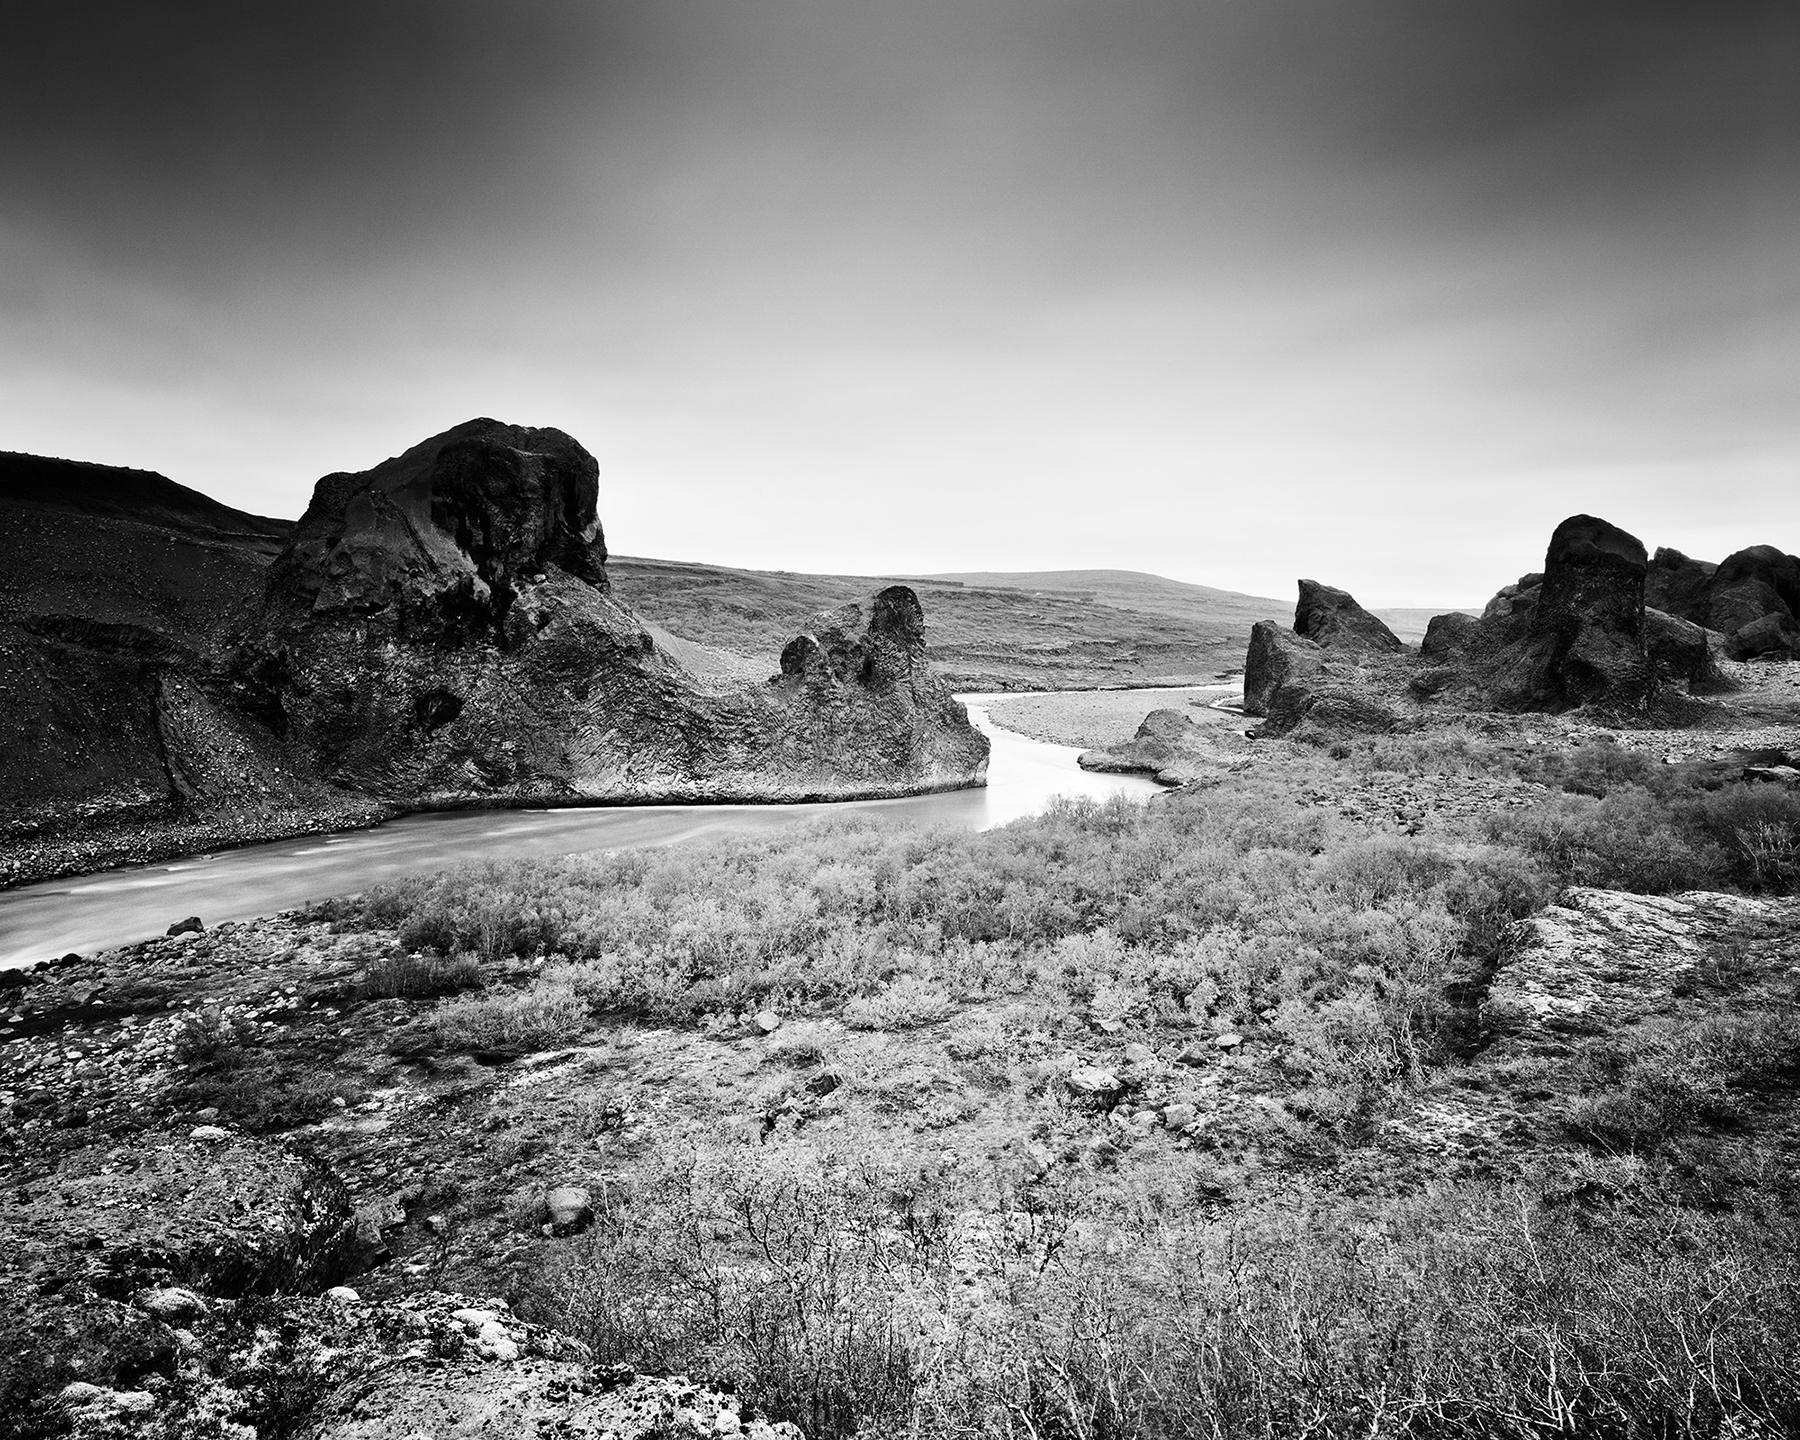 Follow Rivers, Islande, photographie noir et blanc à longue exposition, paysage